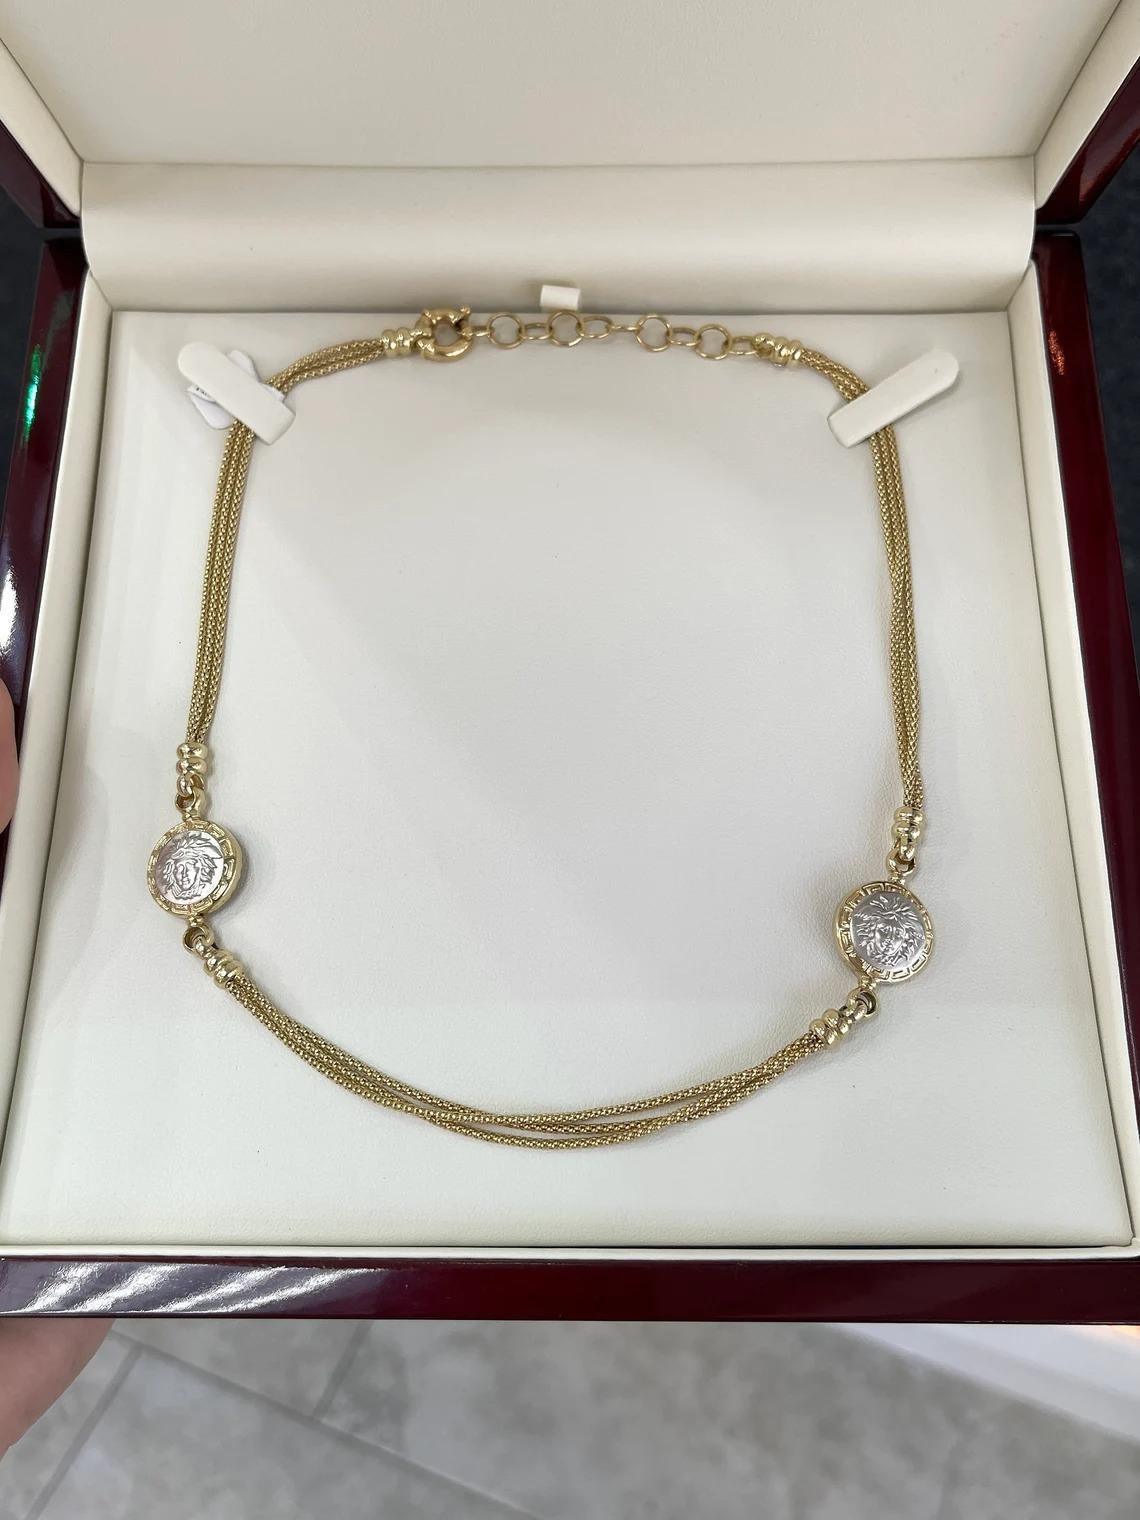 Werfen Sie einen Blick auf diese atemberaubende Medusa-Halskette aus massivem Gold. Dieses Stück ist wirklich einzigartig und ein Unikat. Gefertigt aus glänzendem 14-karätigem Gelbgold, fallen drei einzelne Kästchenketten mit einem Durchmesser von